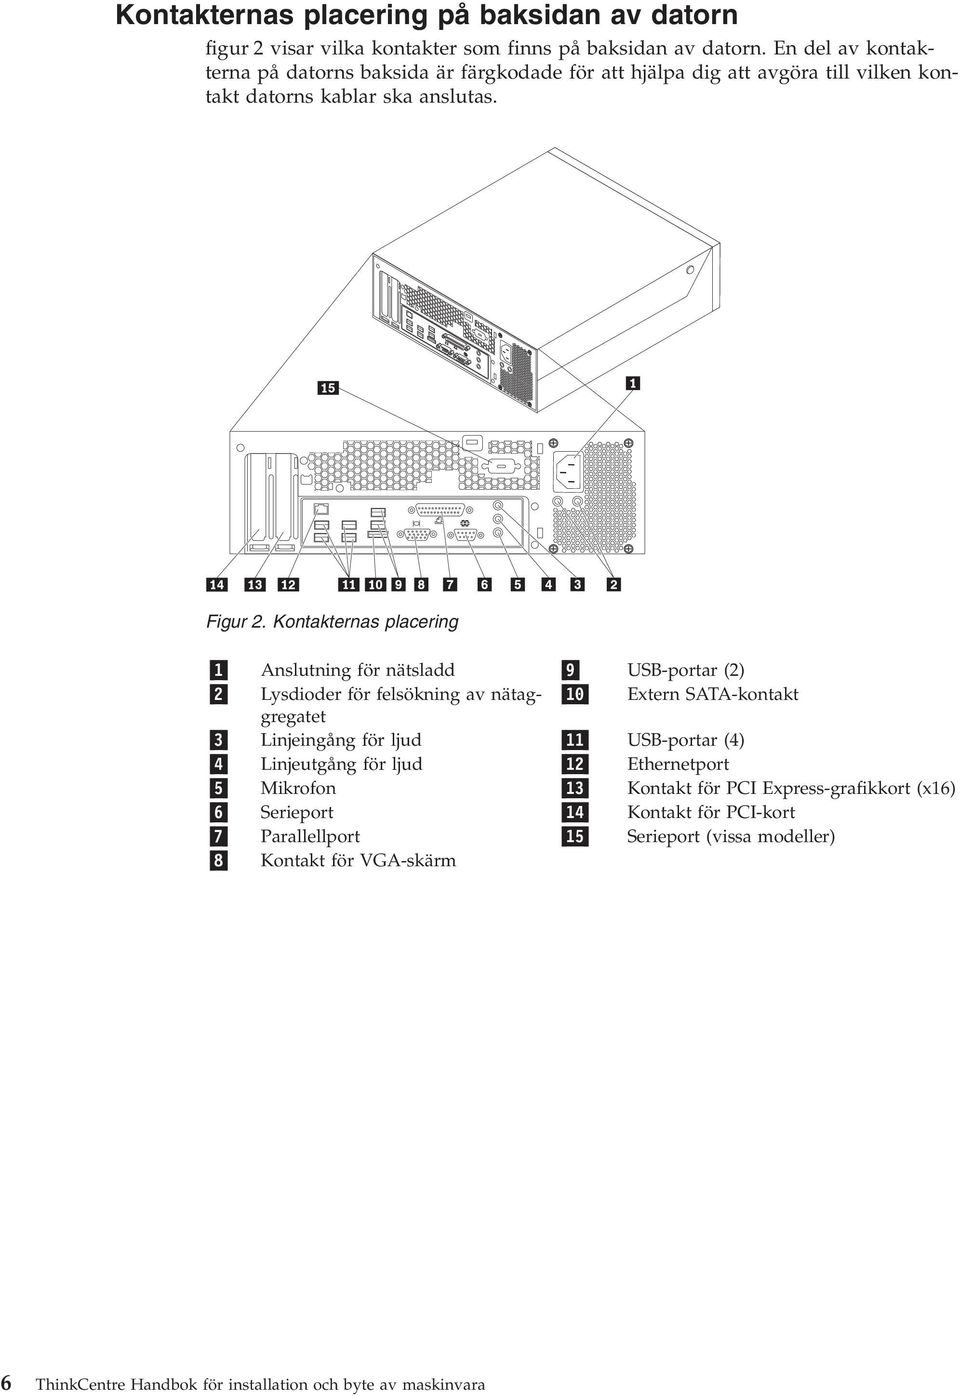 Kontakternas placering 1 Anslutning för nätsladd 9 USB-portar (2) 2 Lysdioder för felsökning av nätaggregatet 10 Extern SATA-kontakt 3 Linjeingång för ljud 11 USB-portar